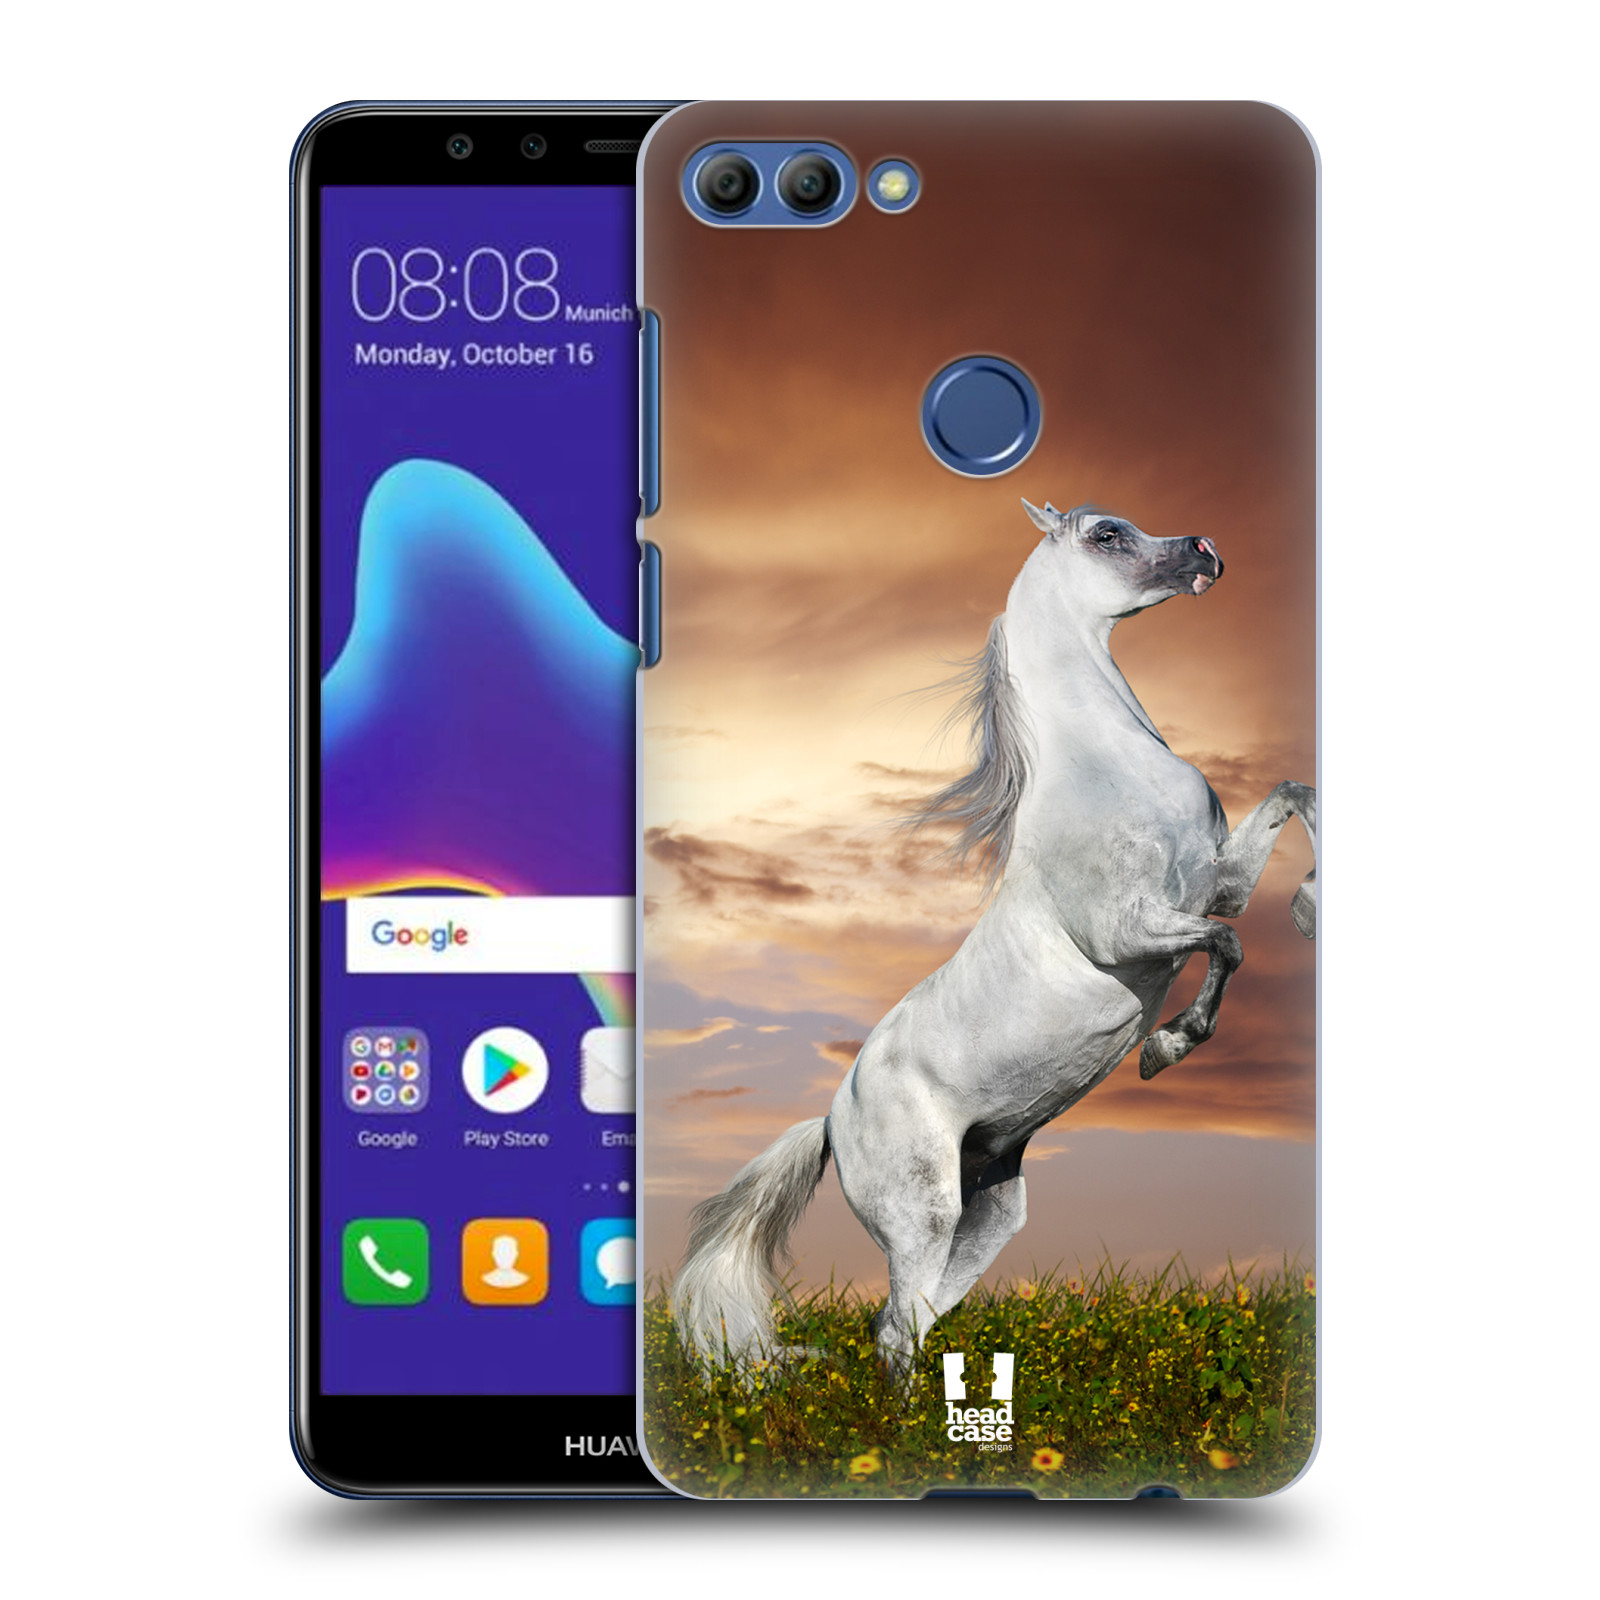 HEAD CASE plastový obal na mobil Huawei Y9 2018 vzor Divočina, Divoký život a zvířata foto DIVOKÝ KŮŇ MUSTANG BÍLÁ